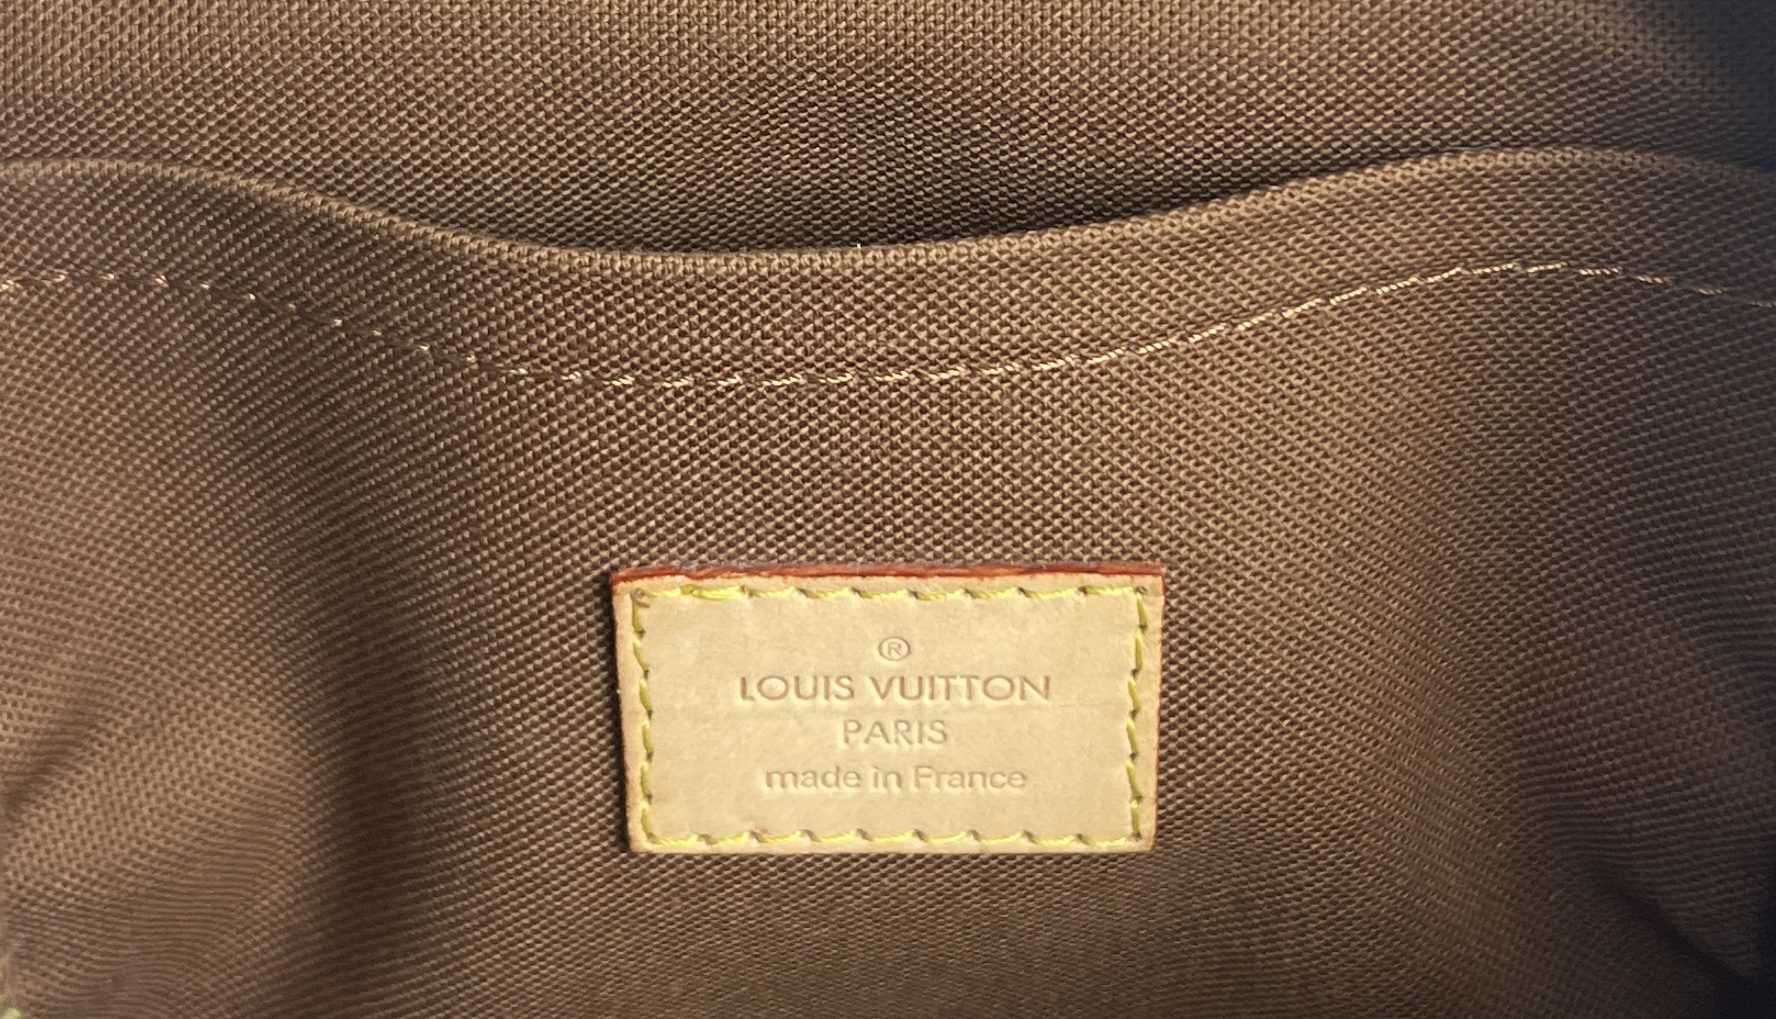 Louis Vuitton Louis Vuitton Bum Bag Bosphore Monogram Canvas Waist